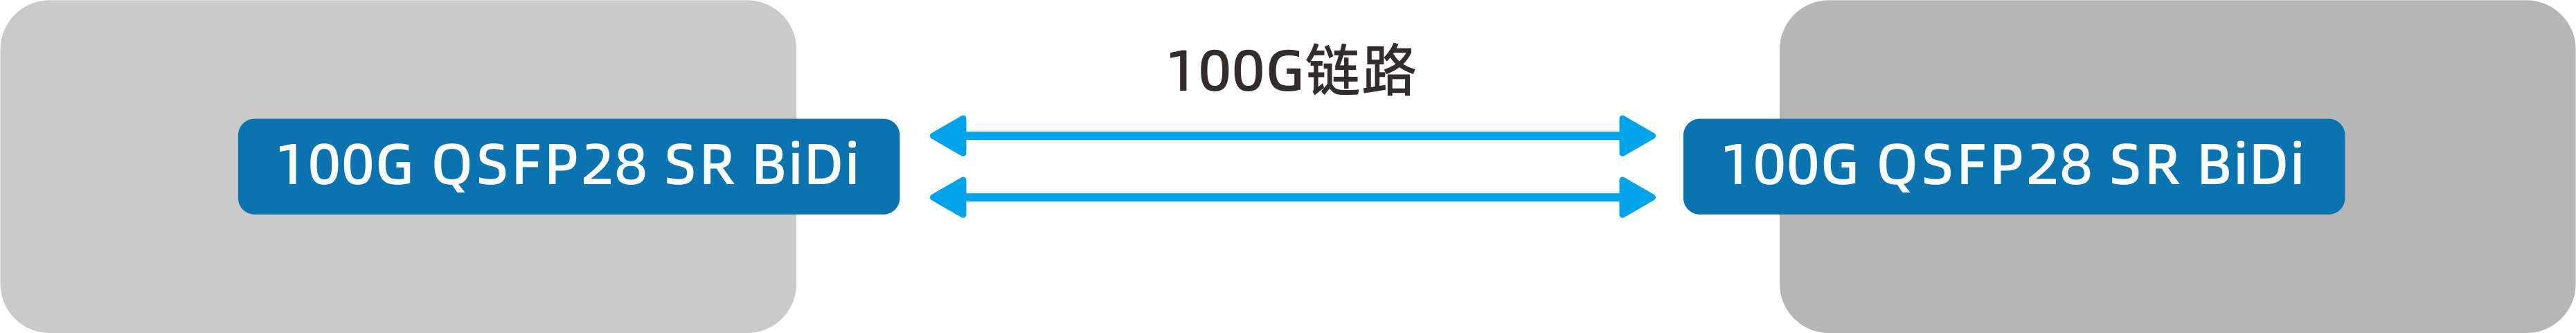 100G-BIDI